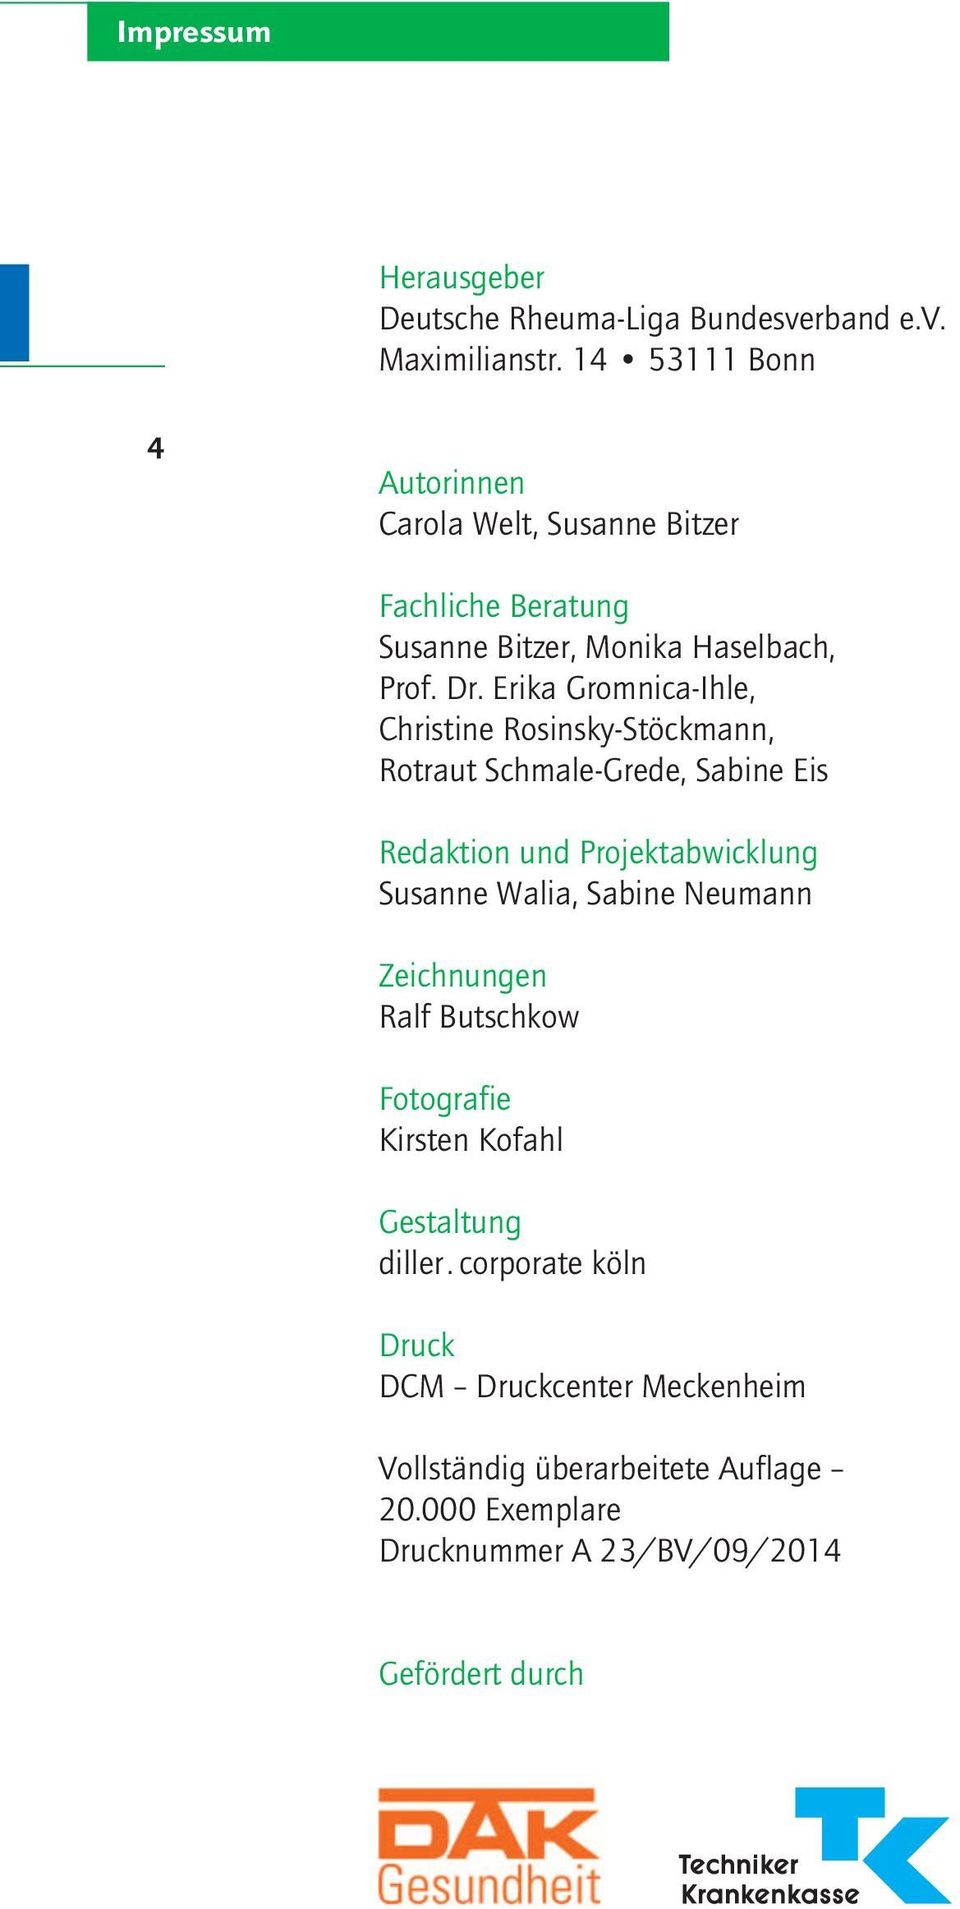 Erika Gromnica-Ihle, Christine Rosinsky-Stöckmann, Rotraut Schmale-Grede, Sabine Eis Redaktion und Projektabwicklung Susanne Walia, Sabine